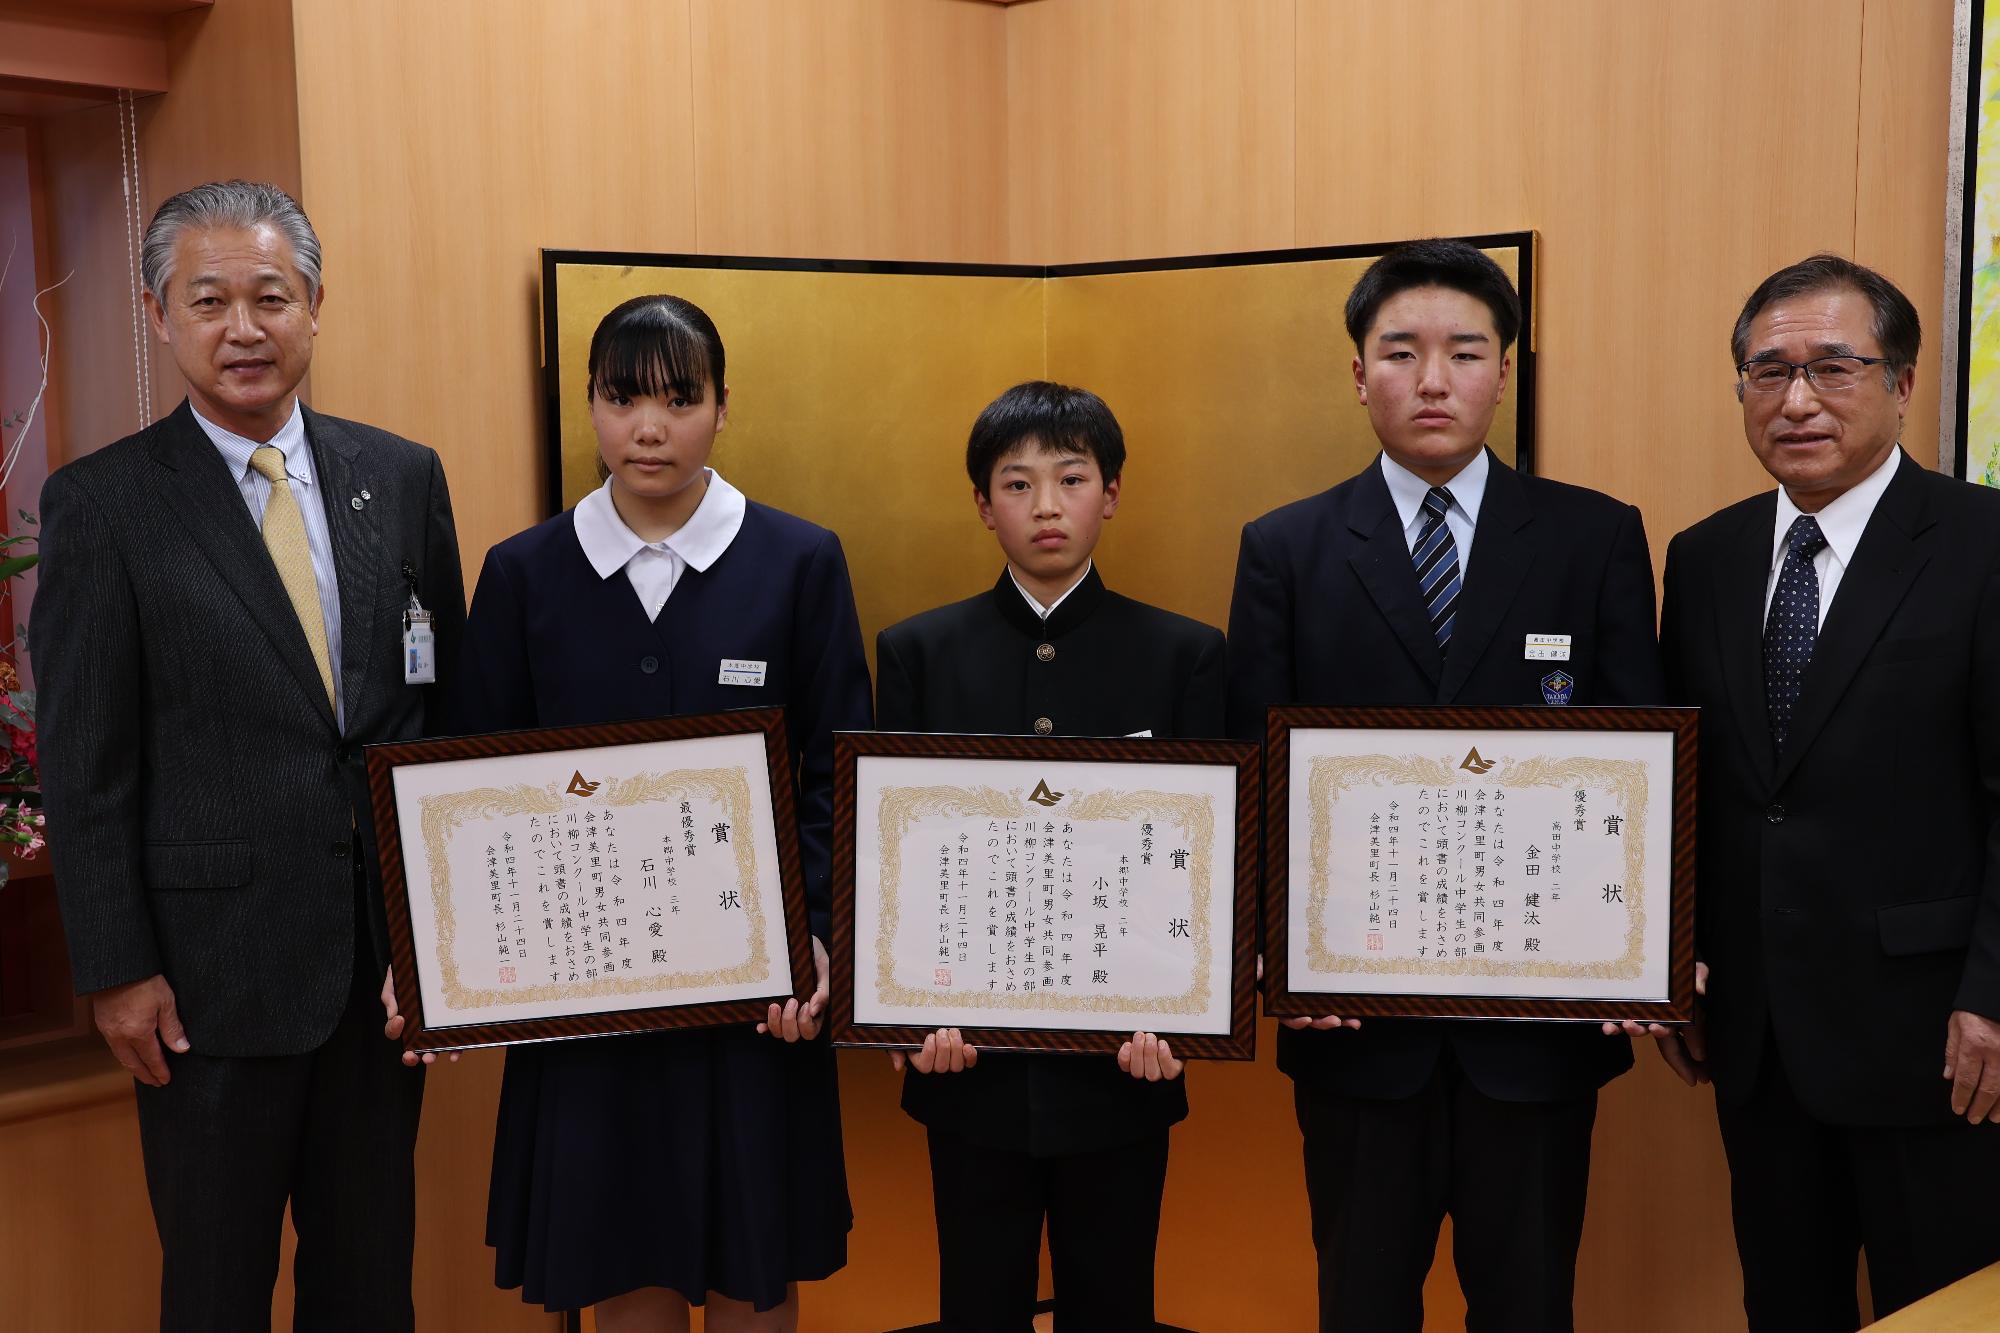 金屏風の前で男子生徒2人と女子生徒1人がそれぞれ賞状を胸の前に持って立っており、町長と川島忠夫会長に挟まれ記念撮影をしている写真